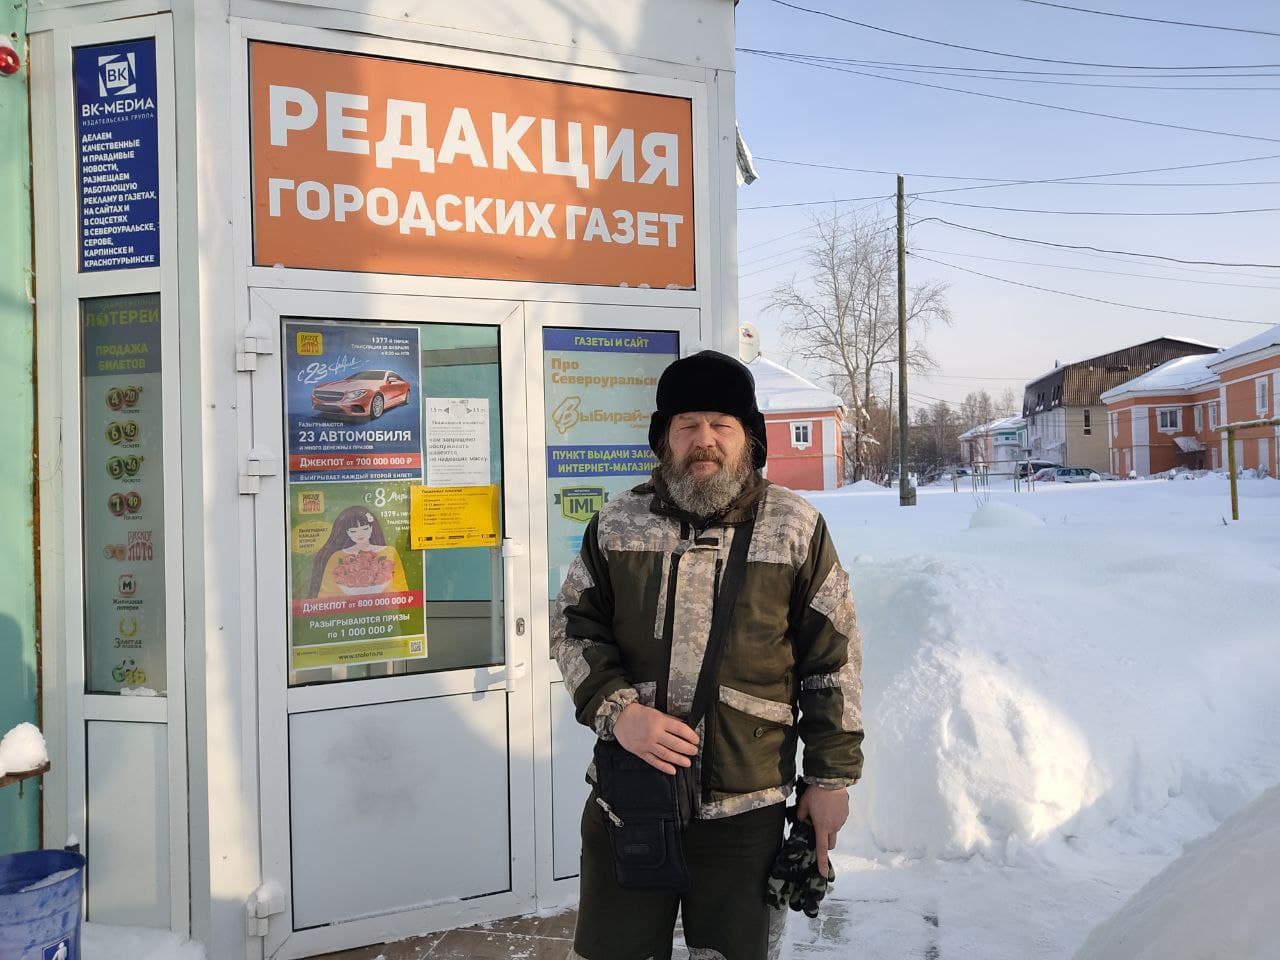 Здесь был Андрей. Путешественник, который идет пешком по России, прибыл в Серов